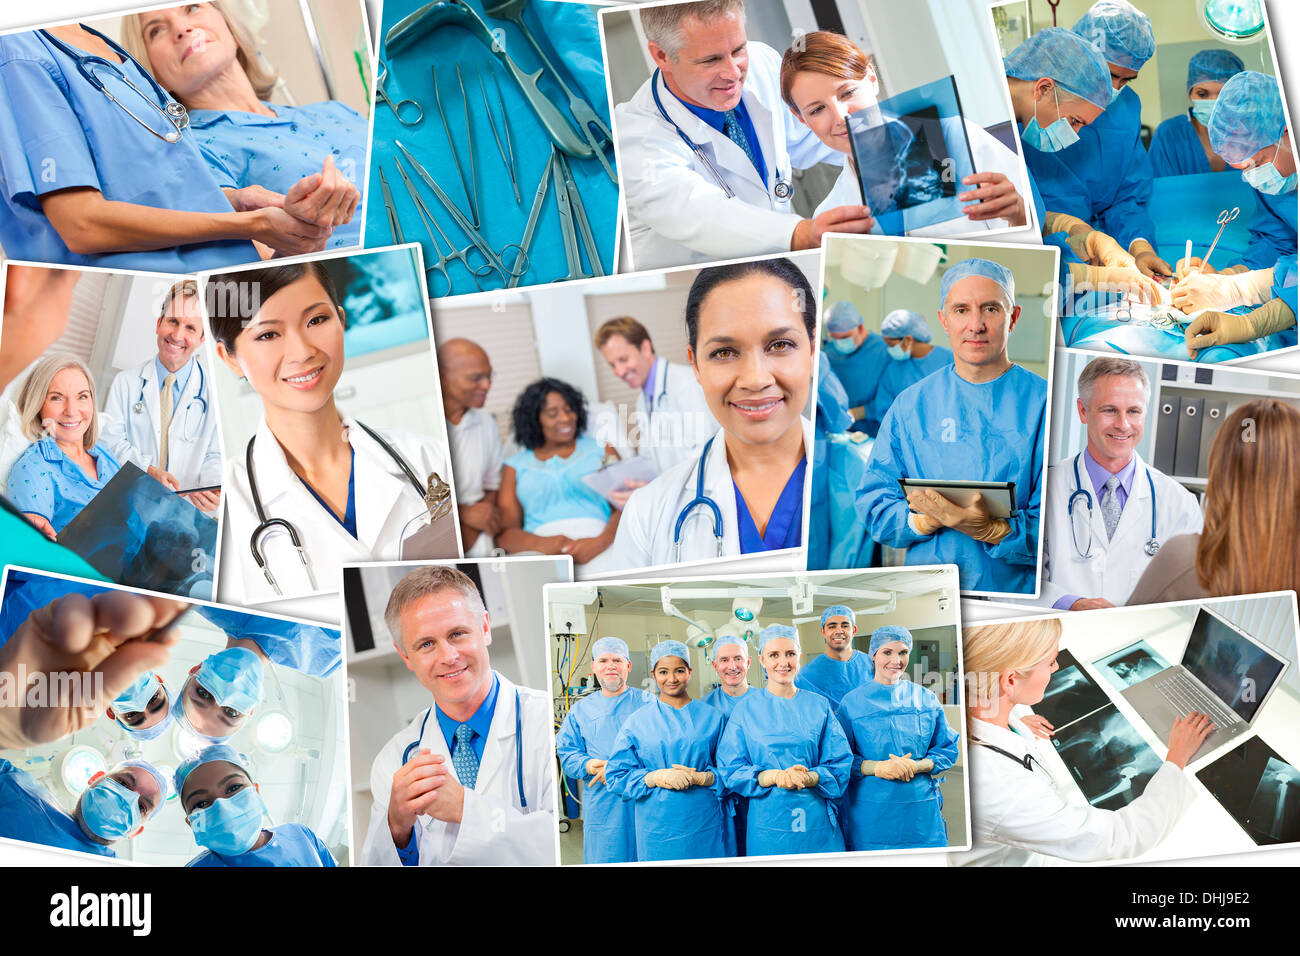 Interracial il personale medico, gli uomini e le donne, medici e infermieri team in ospedale, intervento chirurgico, contribuendo ad esaminare pazienti Foto Stock